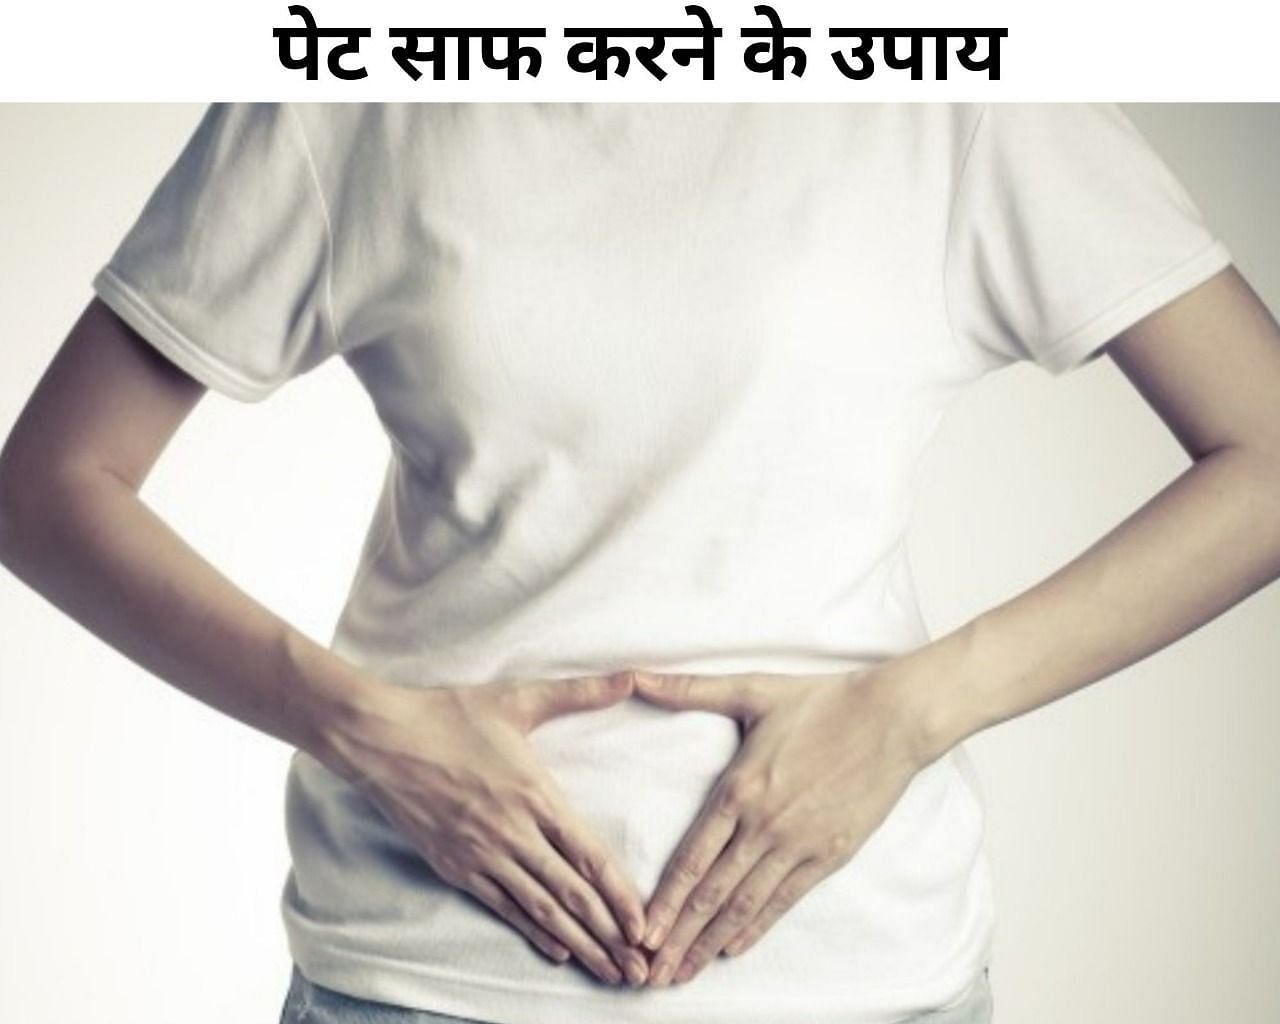 पेट साफ करने के उपाय (फोटो - sportskeeda hindi)